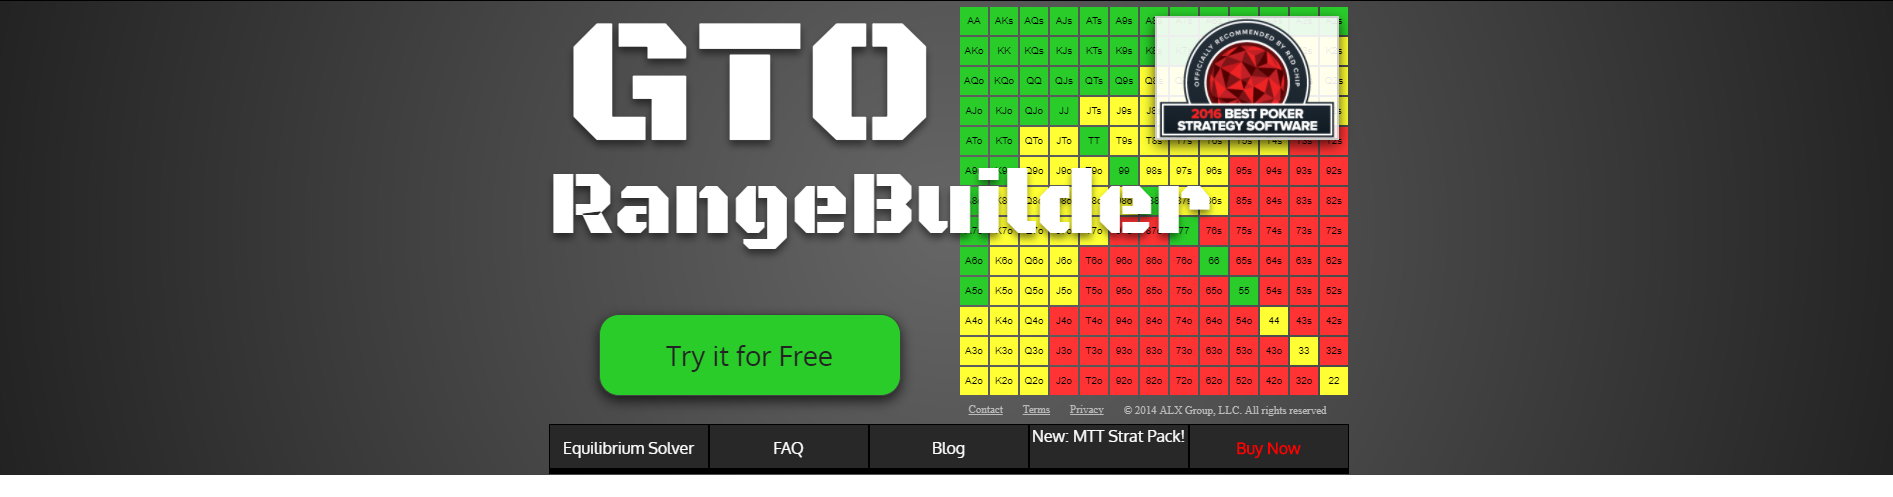 Améliorer votre poker grâce à GTO Range Builder